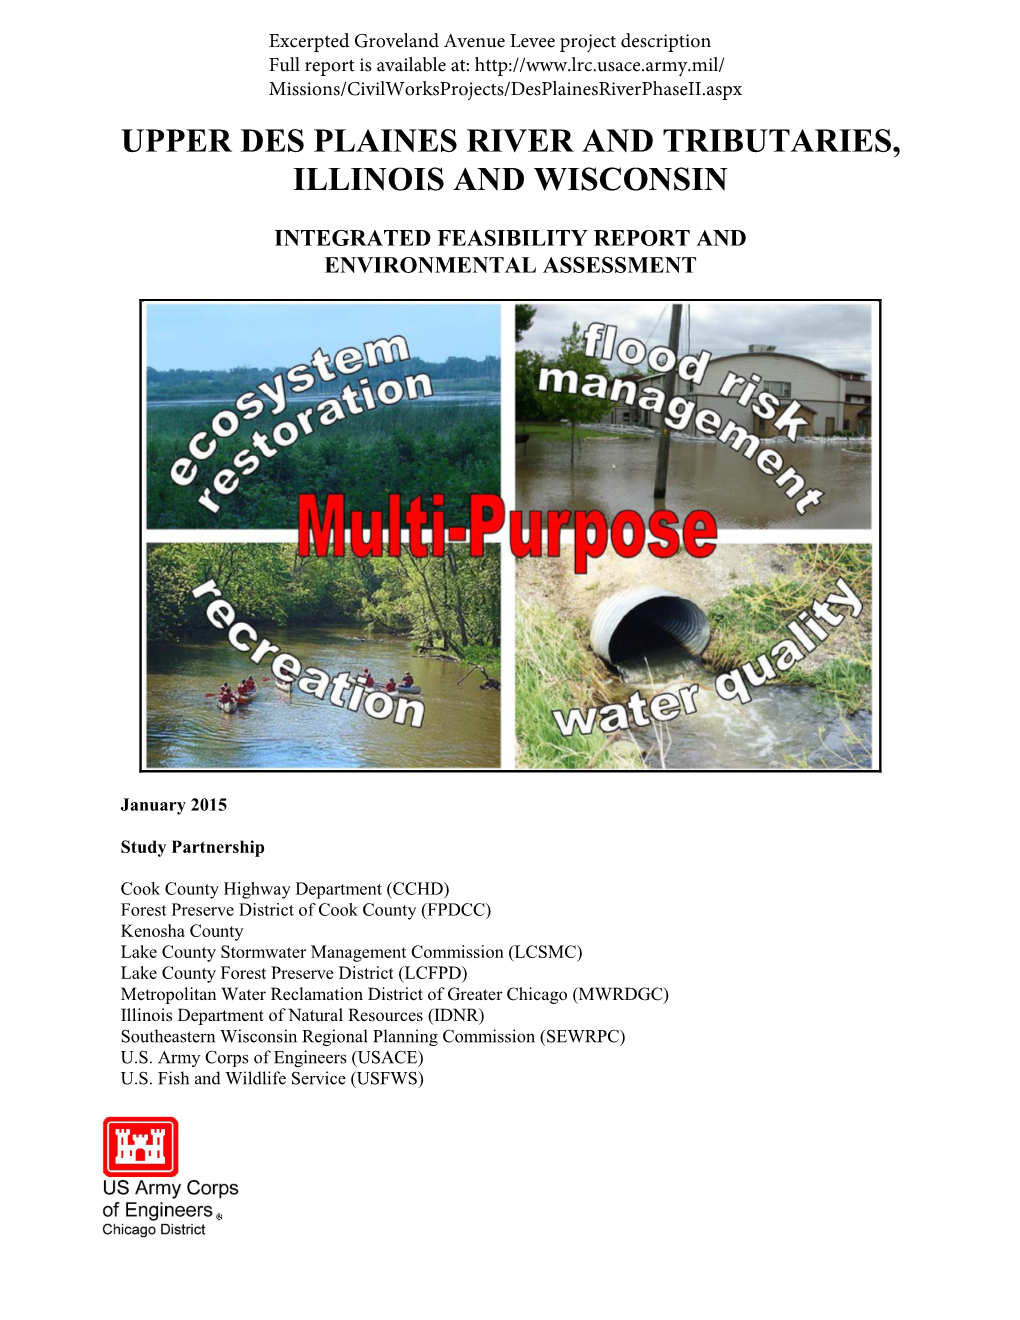 Upper Des Plaines River Feasibility Study